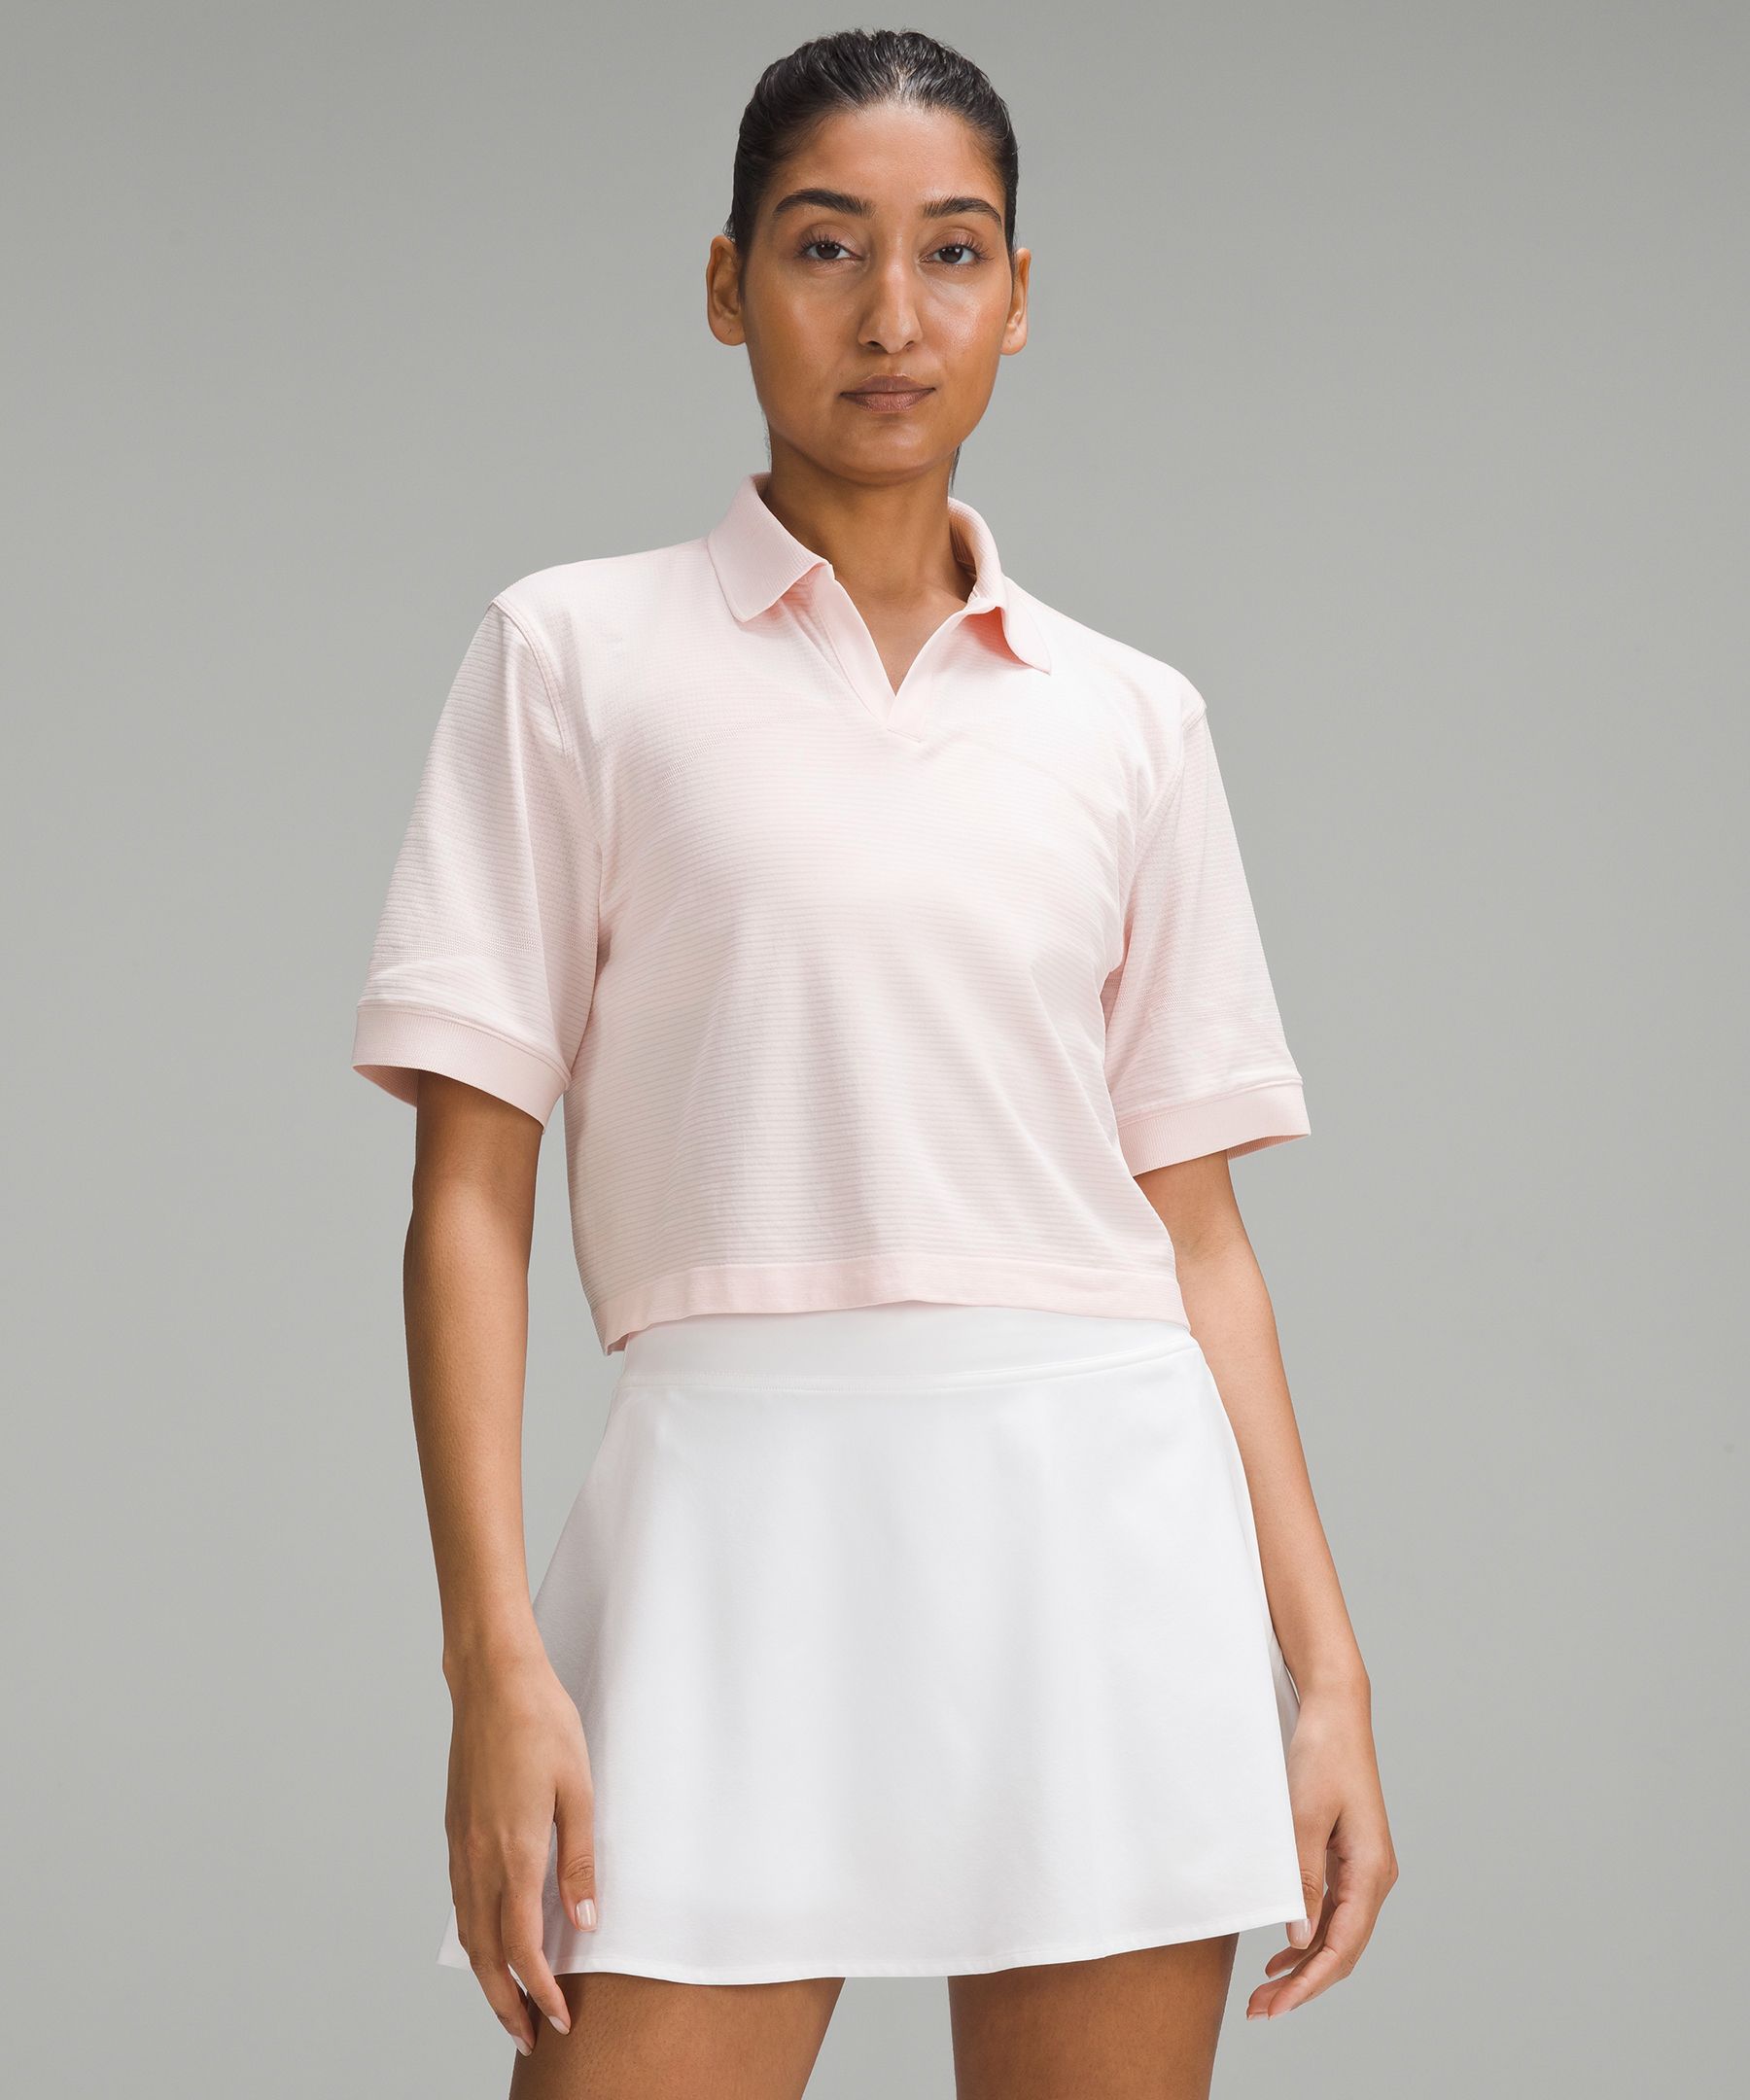 Women's Golf Cotton Polo Shirt Zipper Short Sleeves Slim Fit